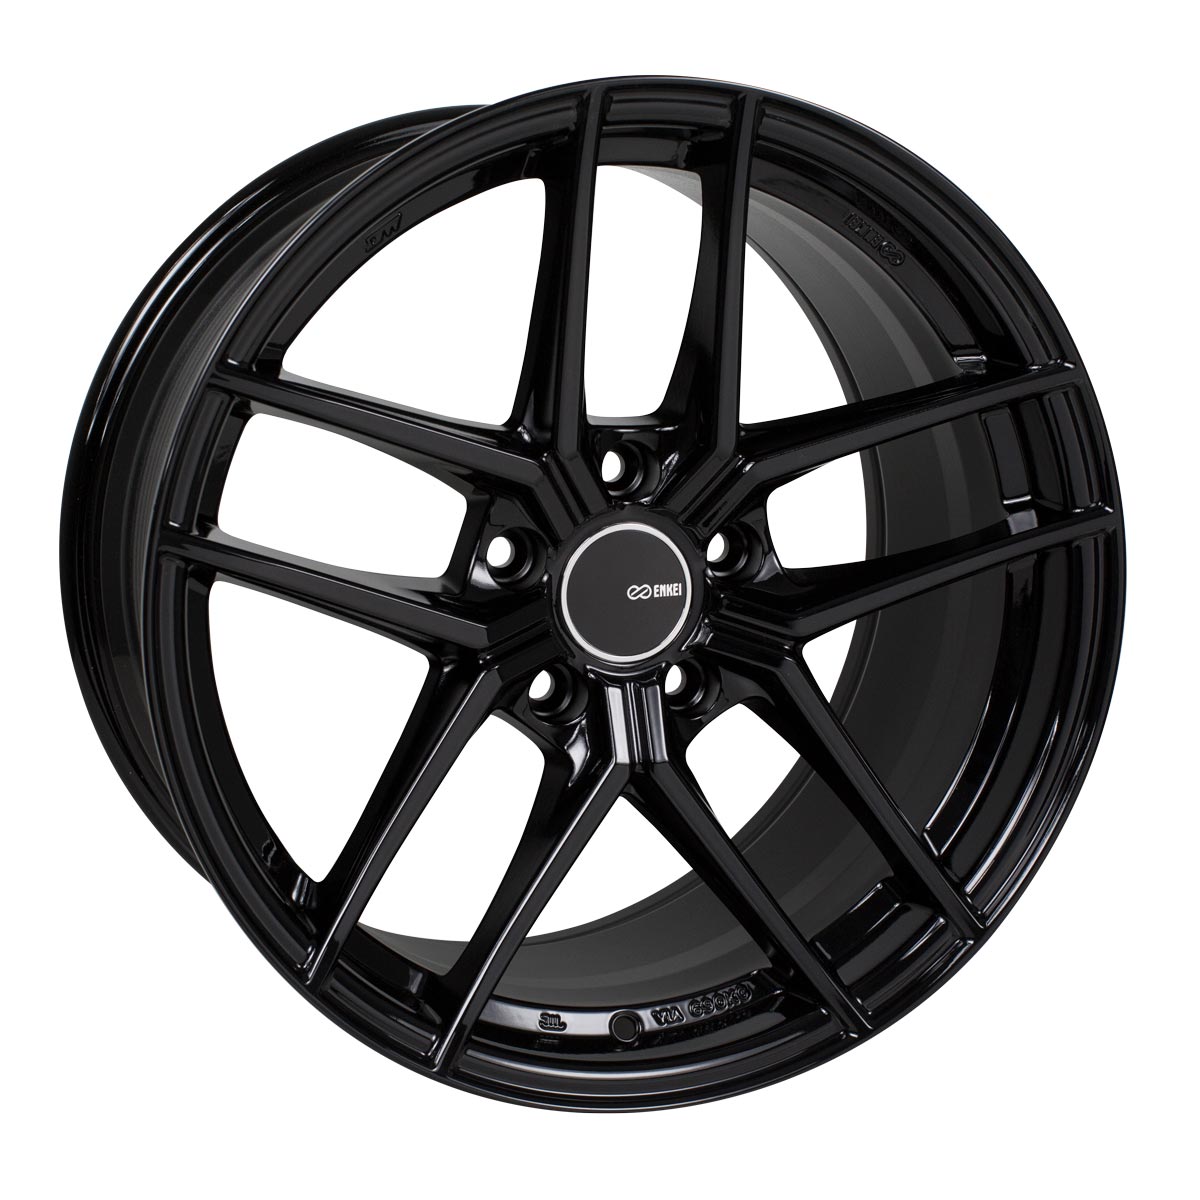 Enkei TY-5 Wheel Gloss Black 19x8.5 +35 5x114.3 498-985-6535BK